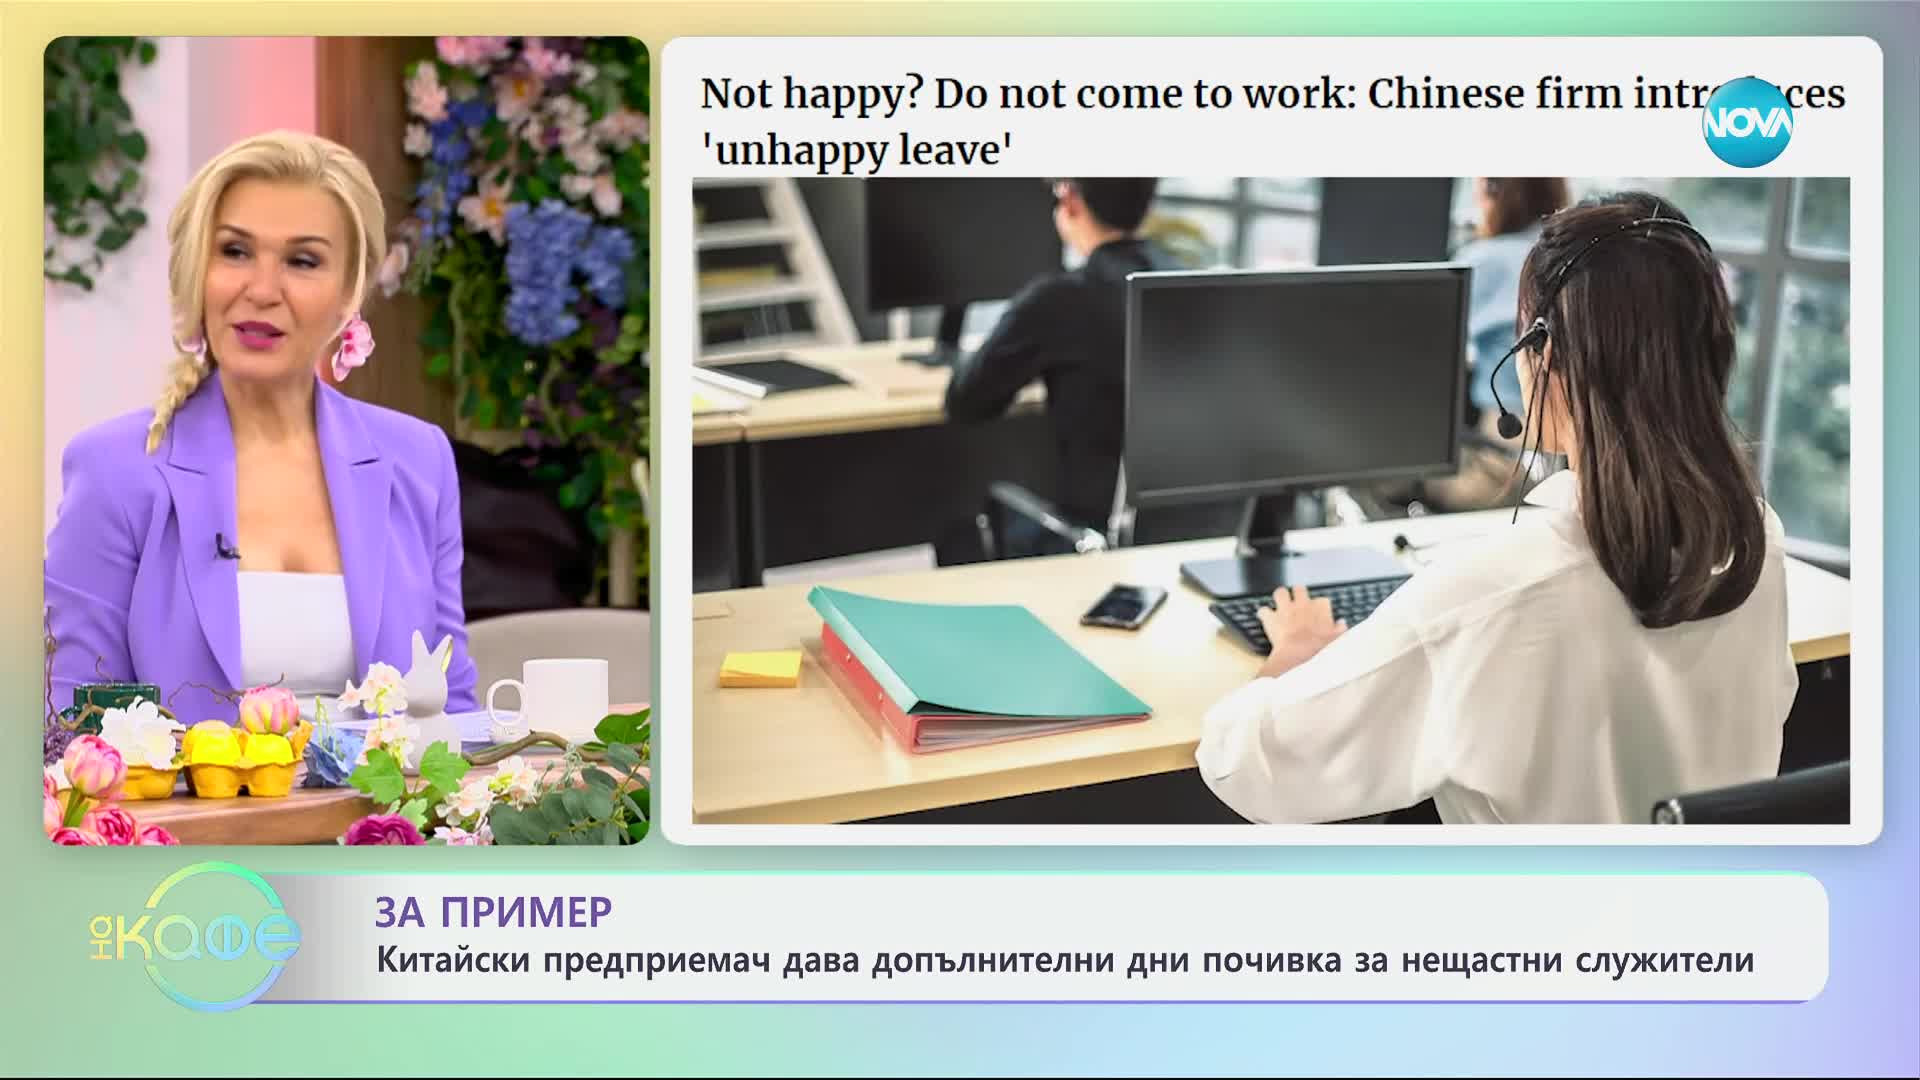 Китайски предприемач дава допълнителен отпуск на нещастни служители